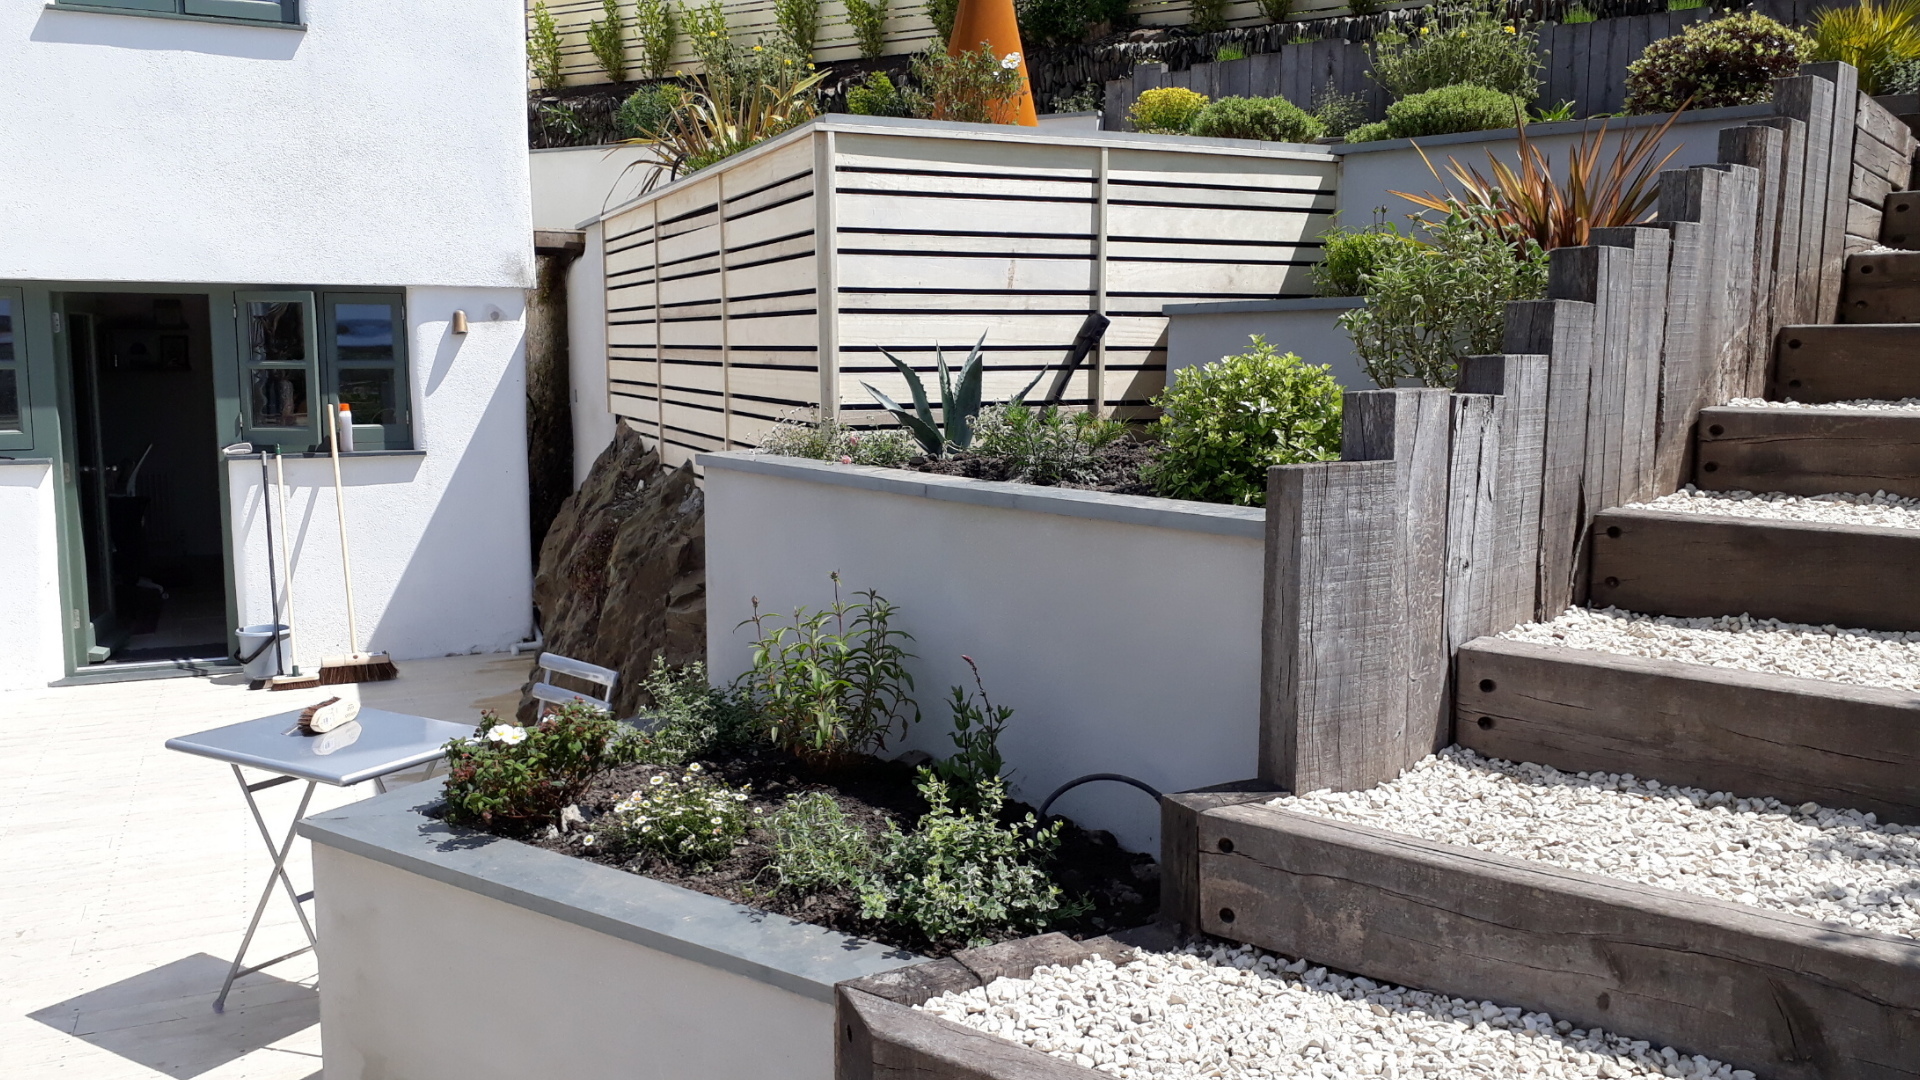 Alison Bockh Garden Design -